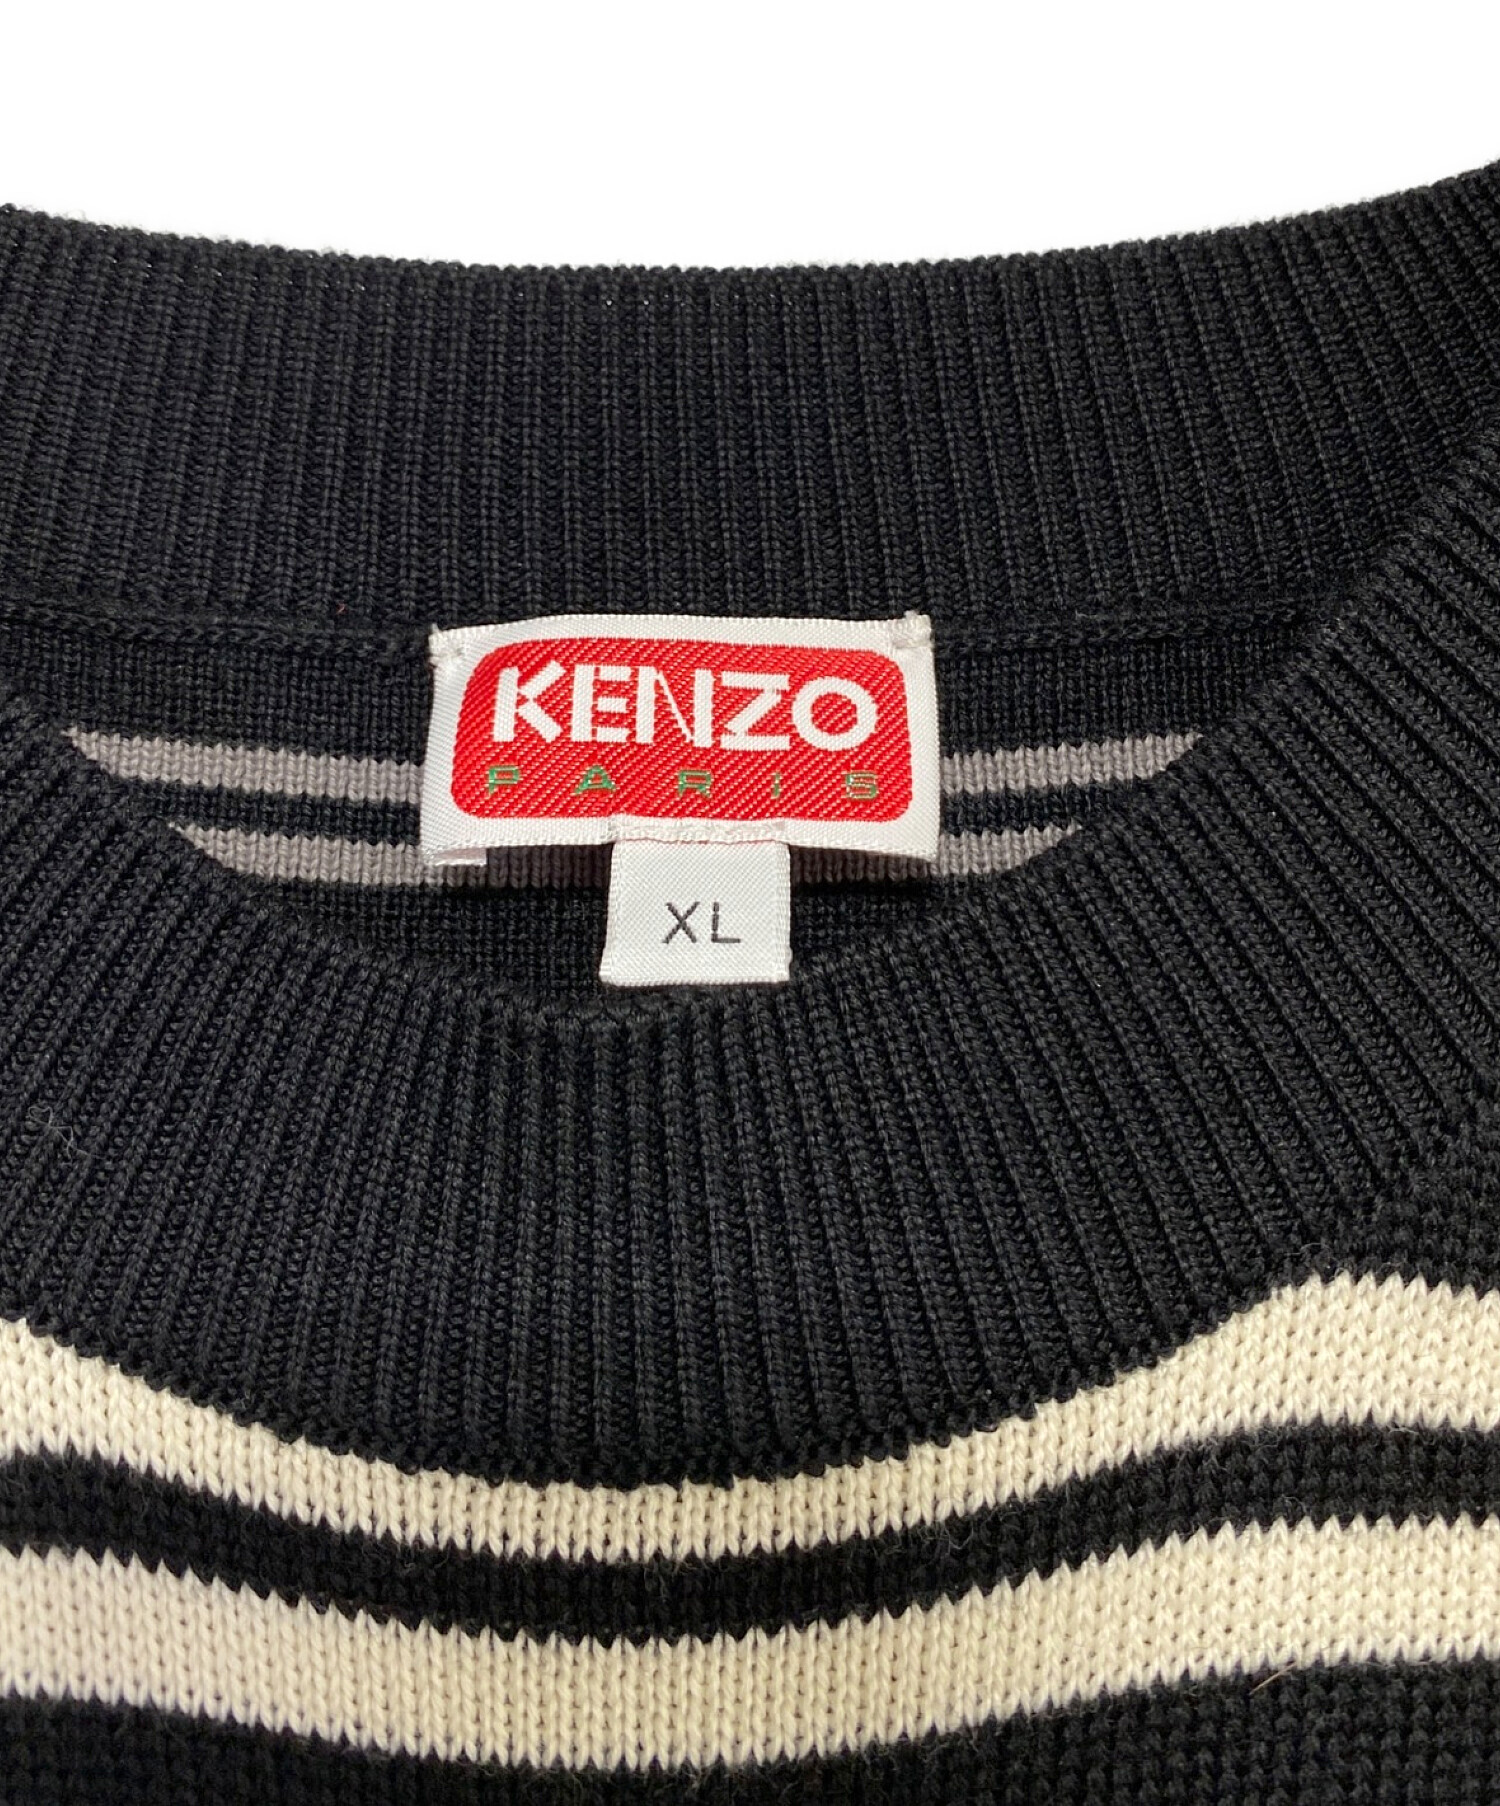 14,400円KENZO☆セーター72,600円相当 未使用タグ付き